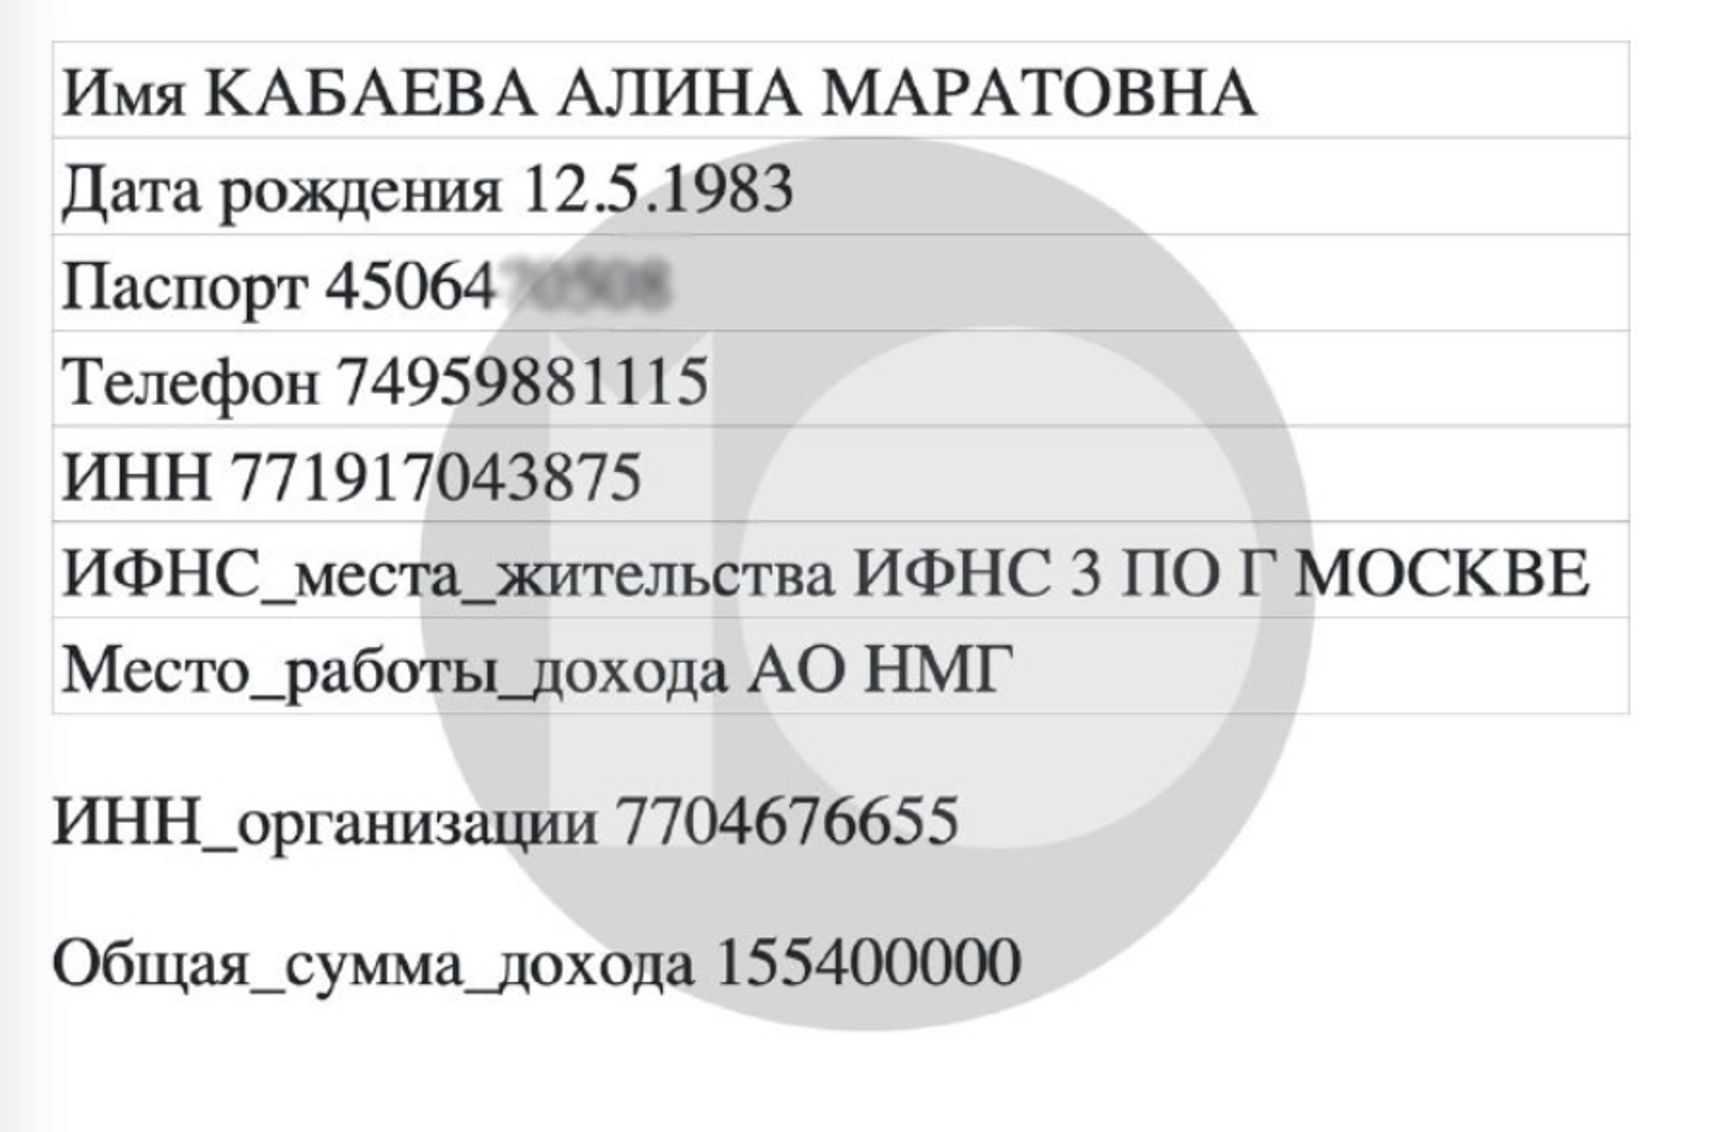 Годовой доход Кабаевой в НМГ упал до 155 млн рублей — «Можем объяснить»